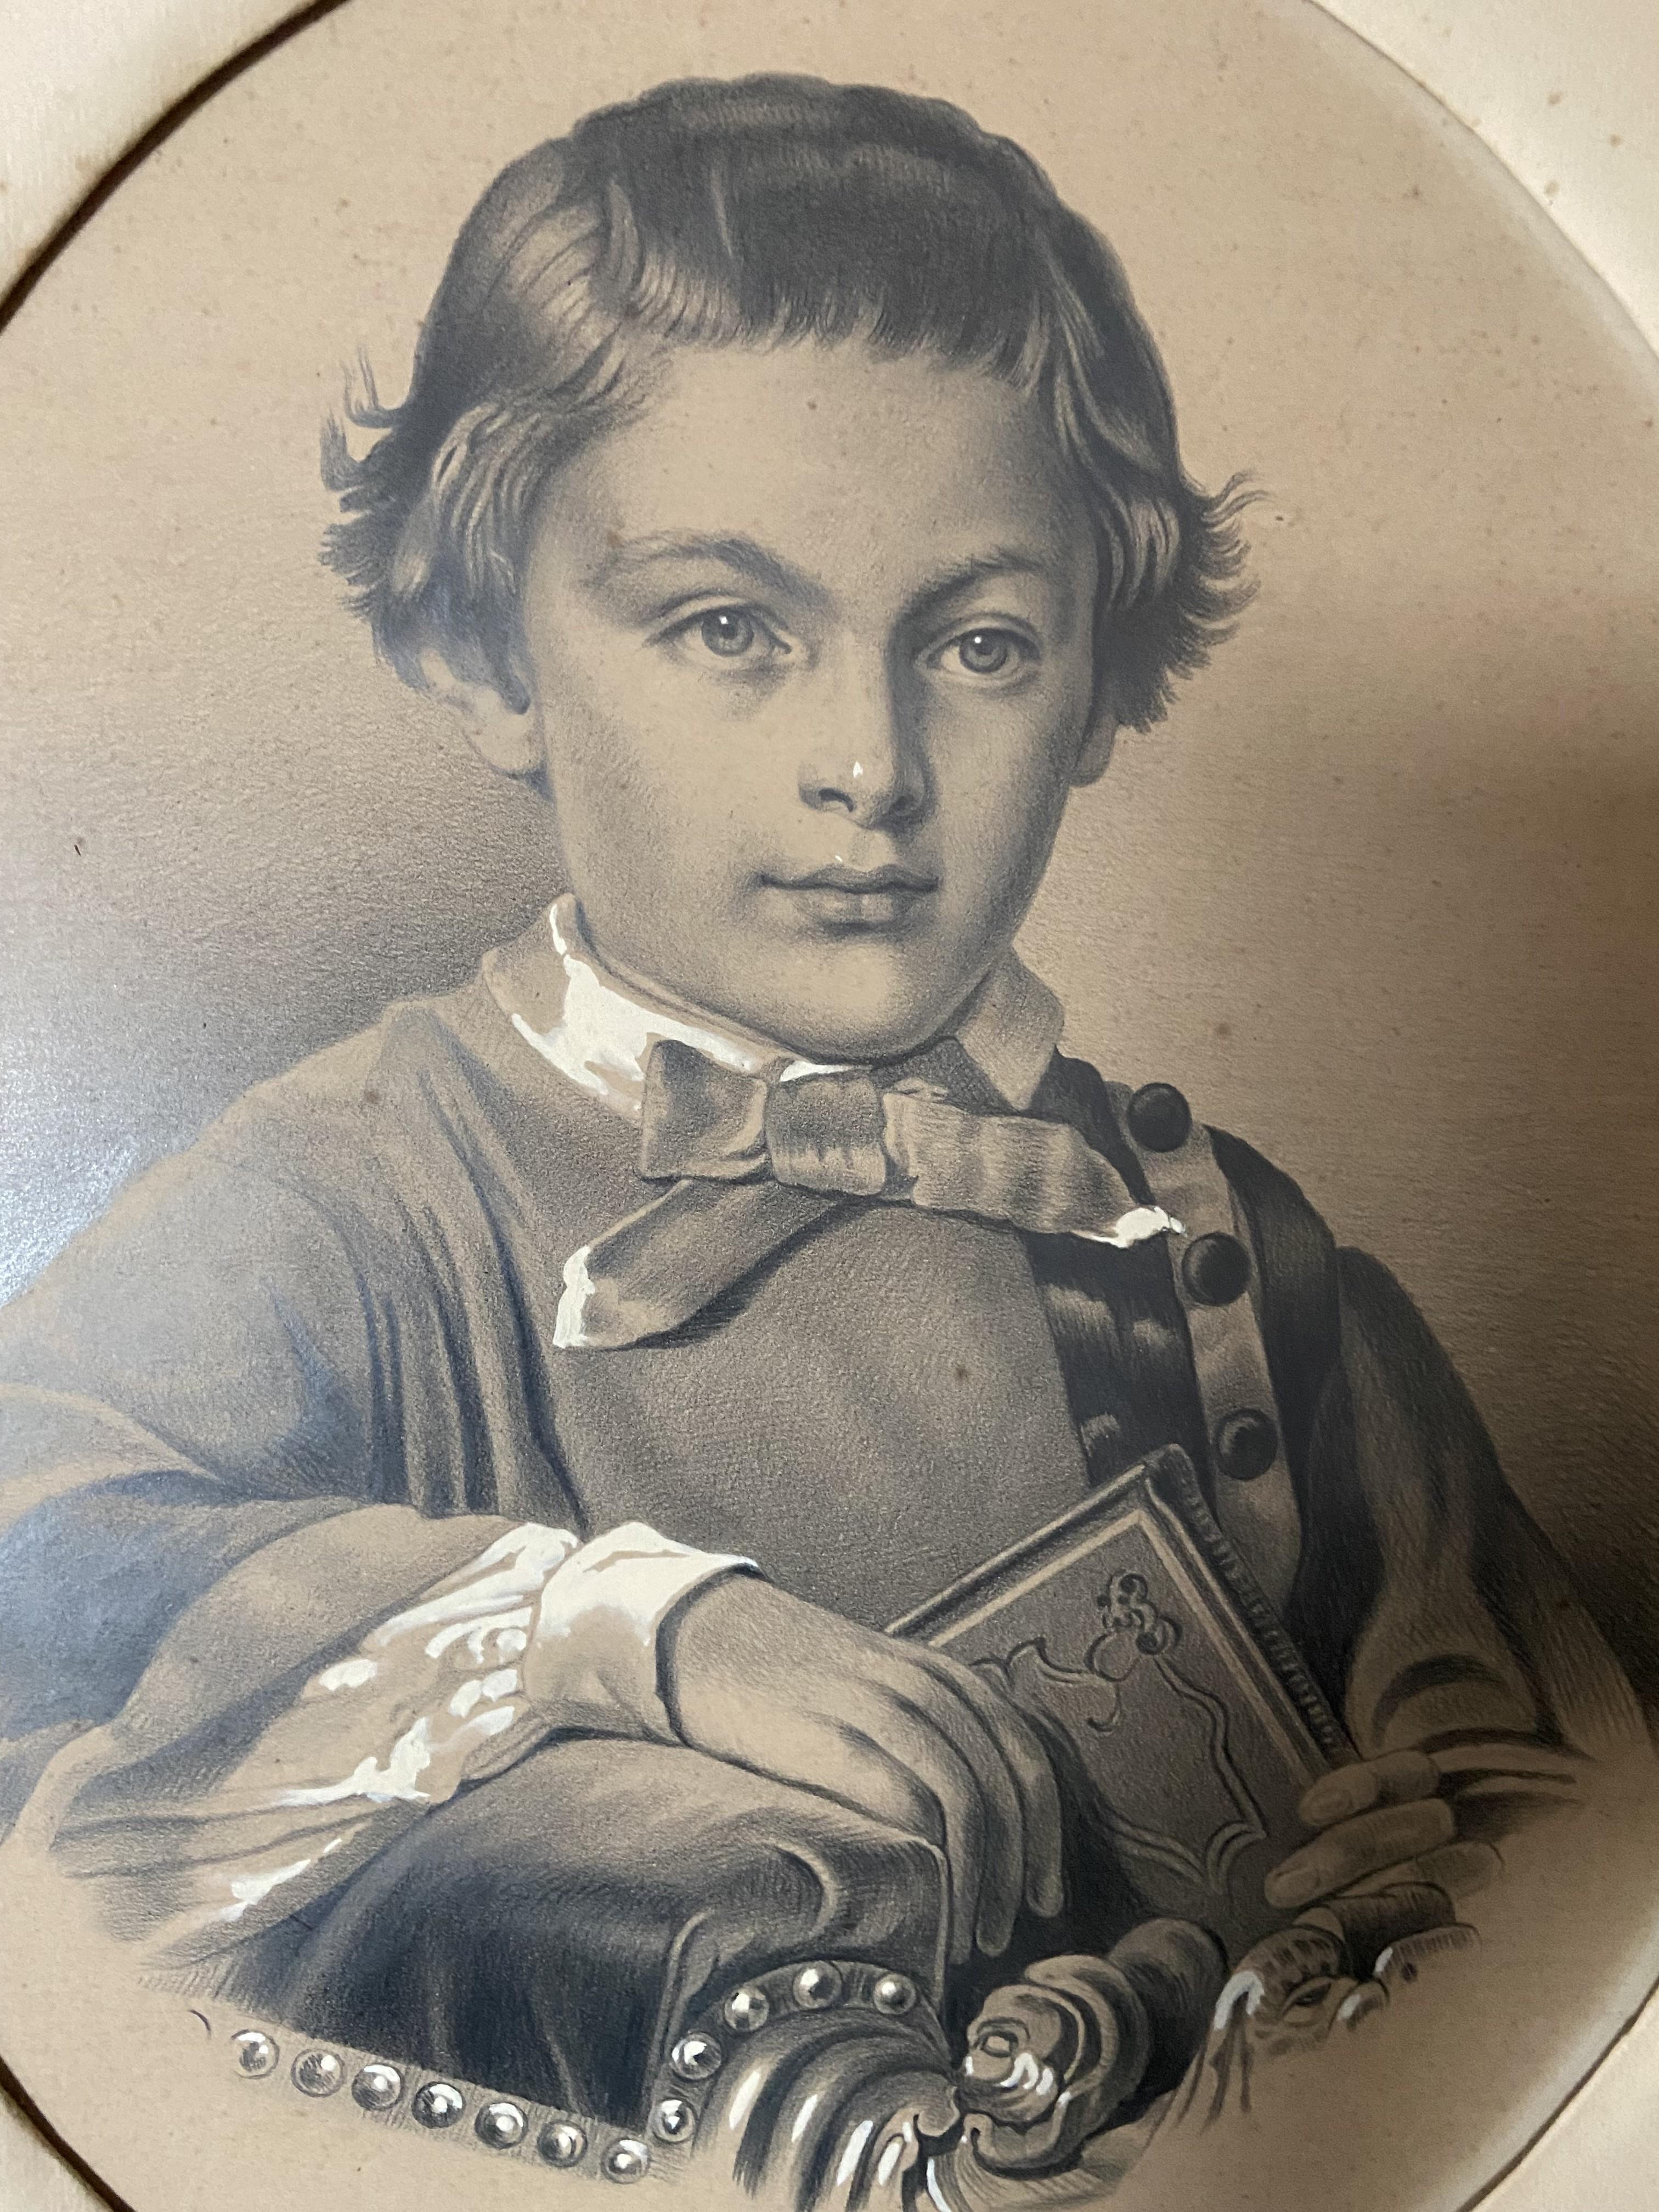 Französische Schule um 1880
Porträt eines Jungen, der ein Buch hält
Graphit und weiße Gouache auf Papier
39,5 x 32 cm Ovalansicht
in gutem Zustand, altersbedingt leicht vergilbt
In seinem ursprünglichen ovalen Rahmen und Passepartout, zahlreiche